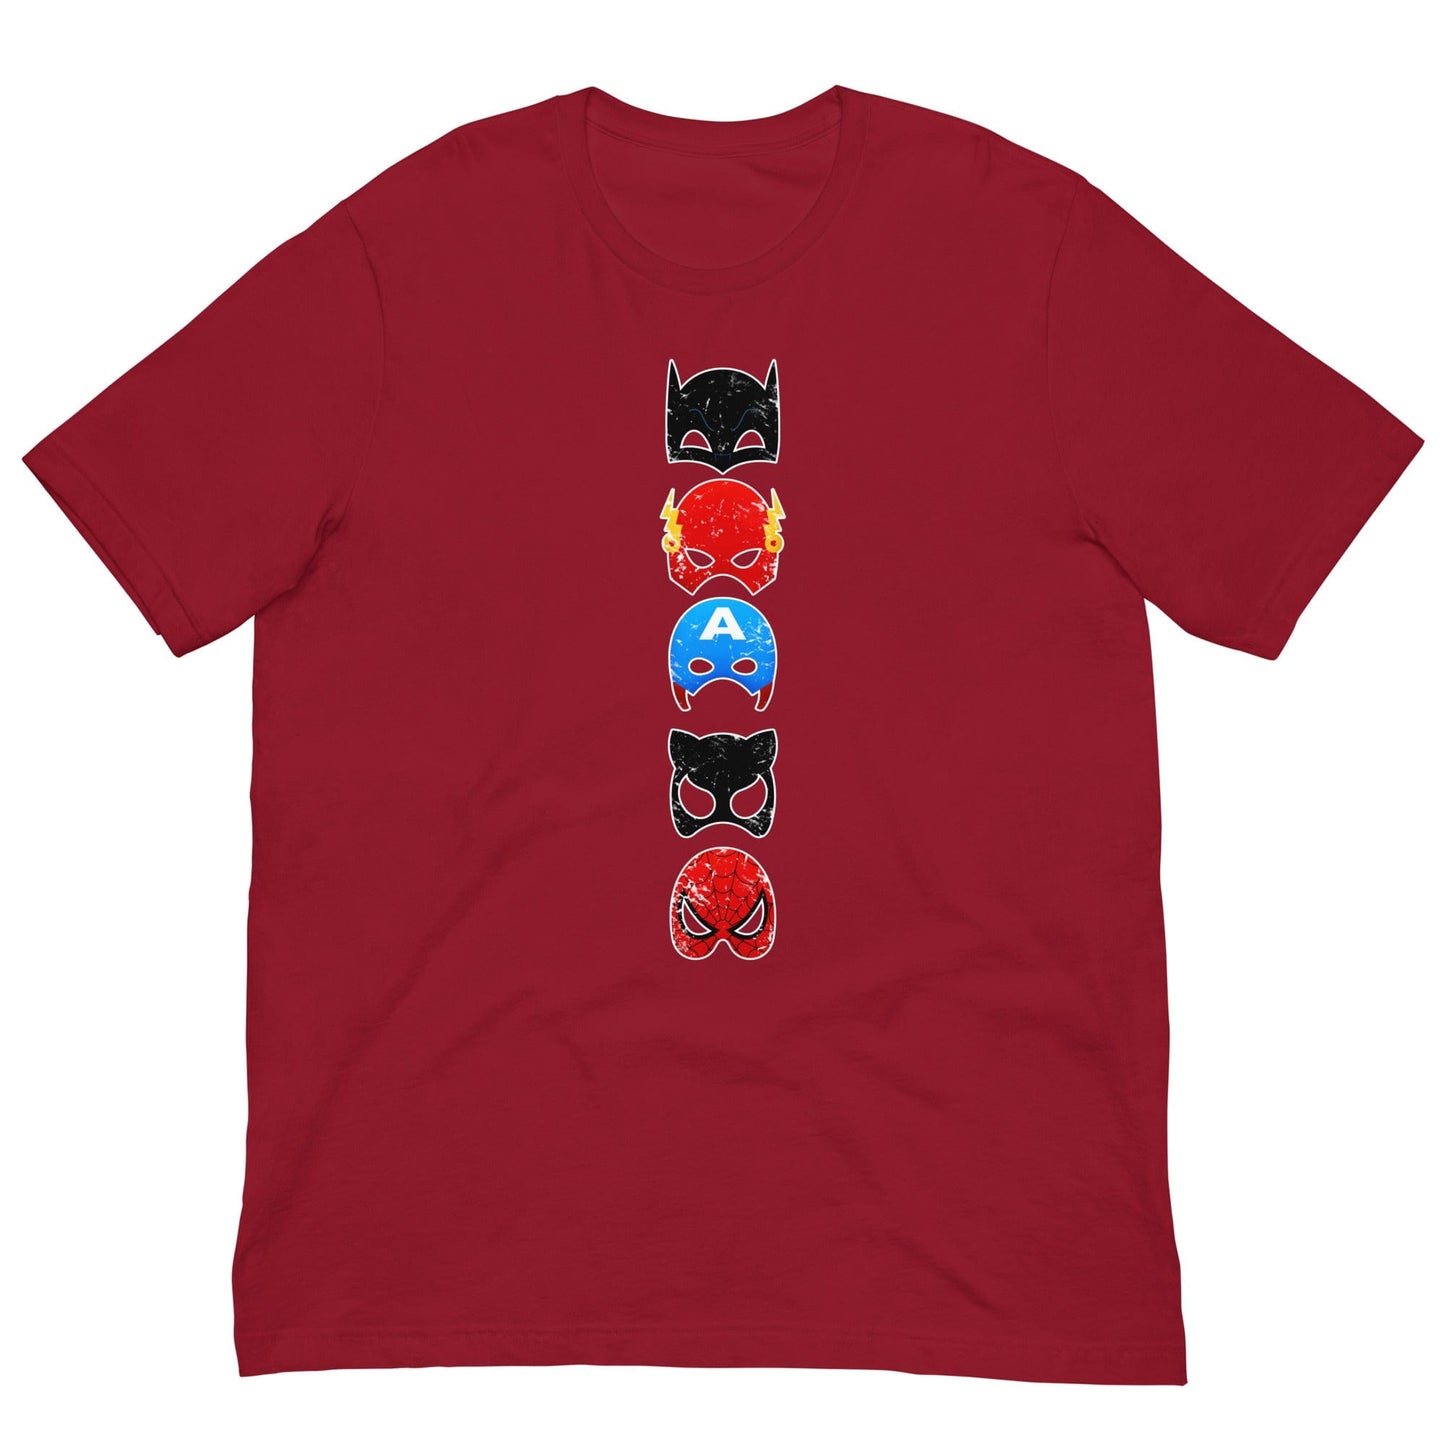 Superheroes T-shirt Cardinal / XS